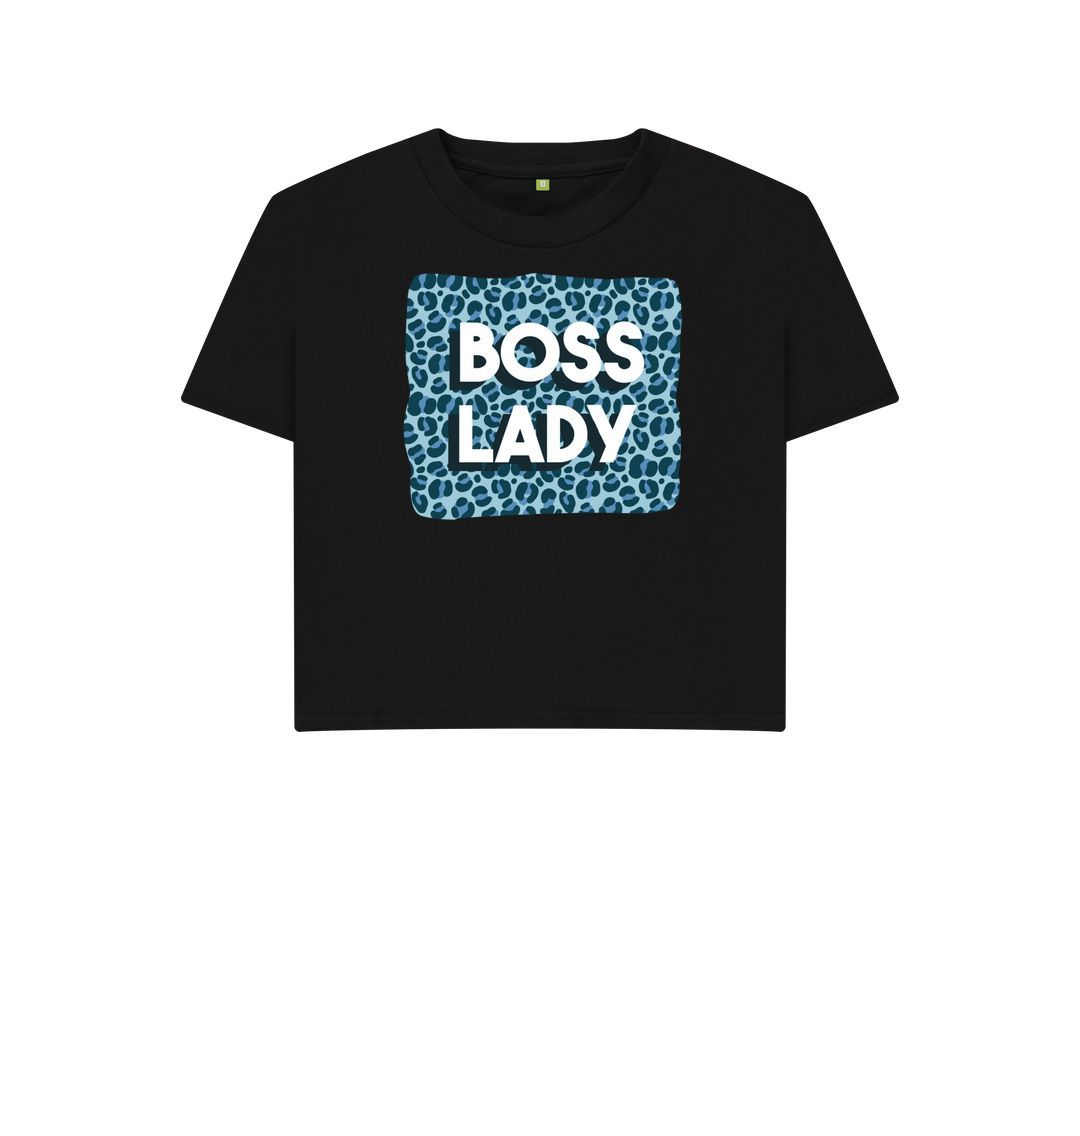 Black Boss Lady Women's Boxy Tee